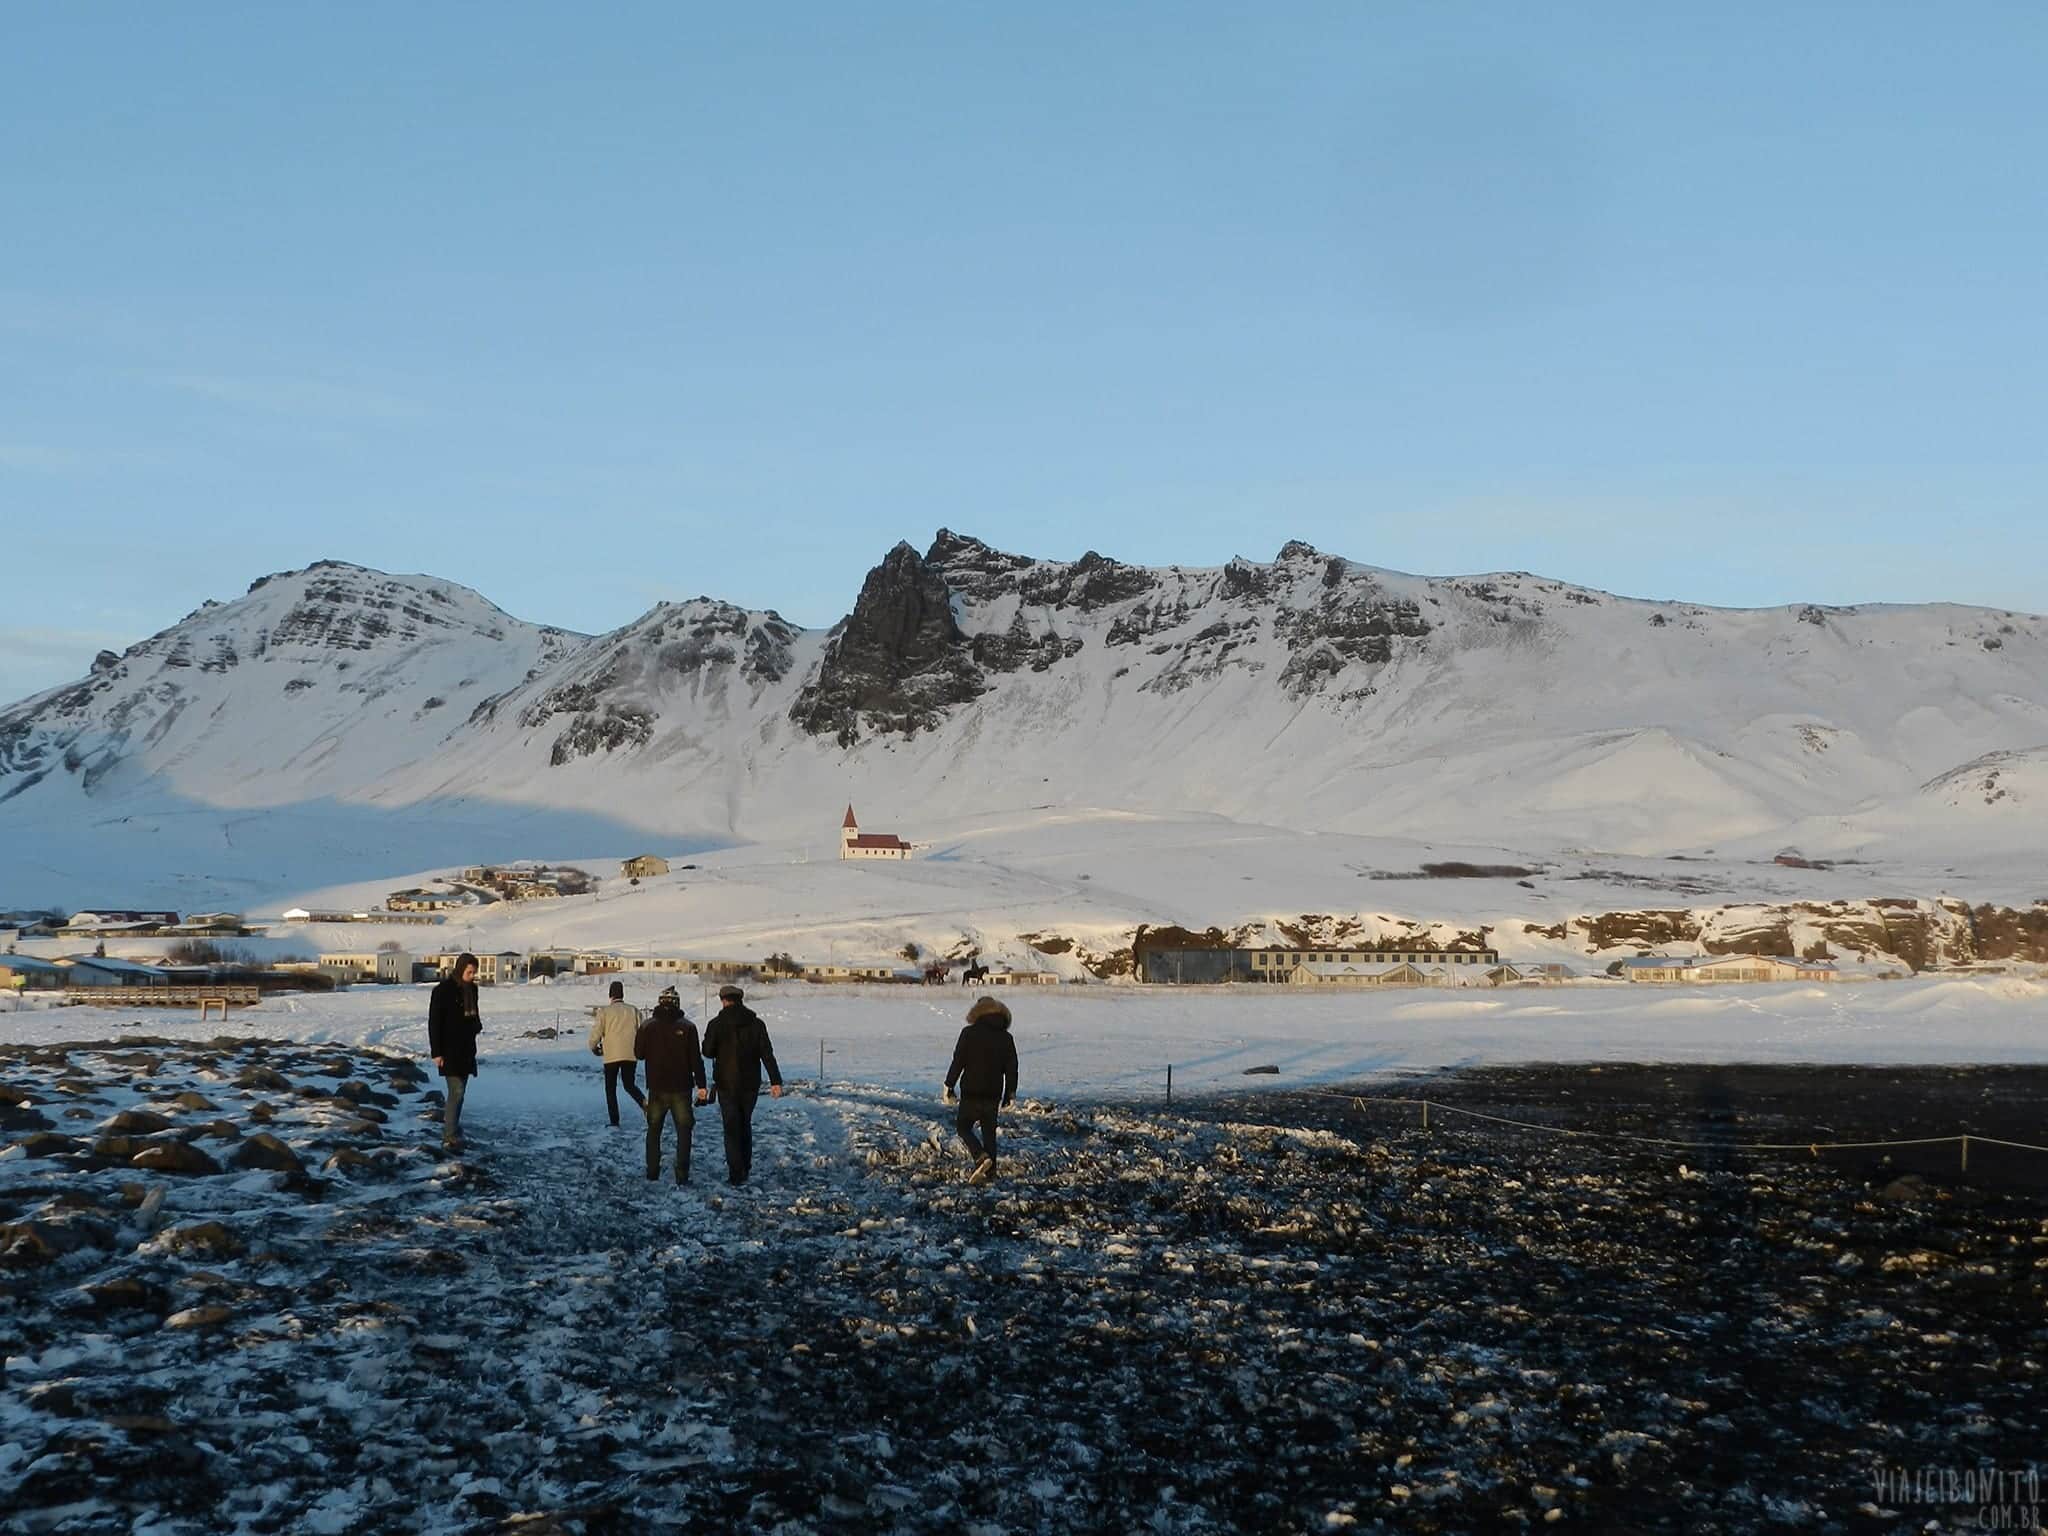 Viajantes "solitários" voltando pra casa ao final de uma road trip pela Islândia